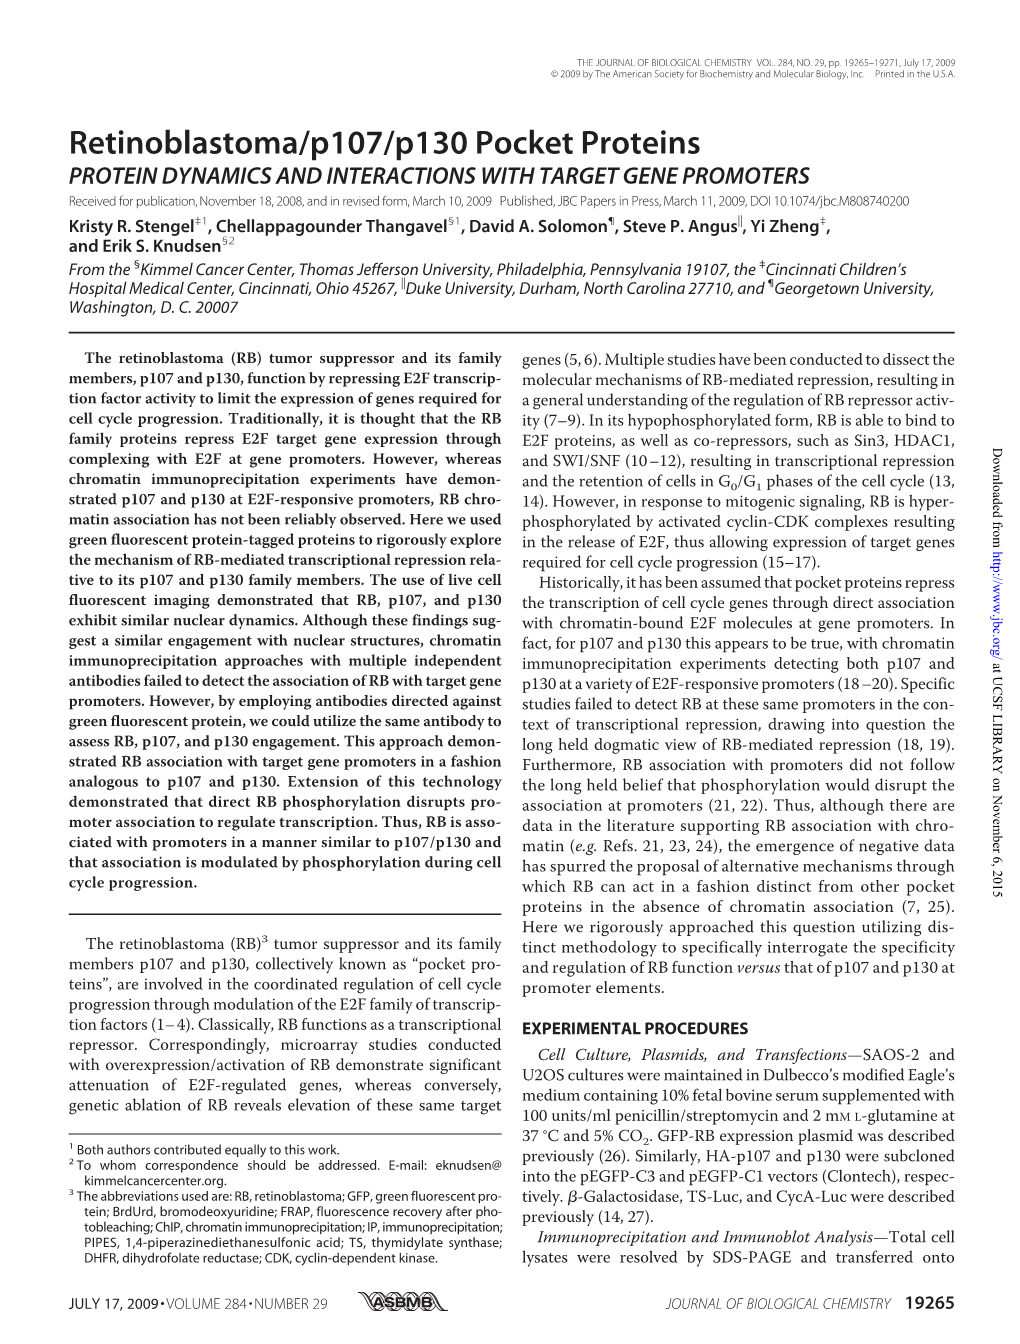 Retinoblastoma/P107/P130 Pocket Proteins